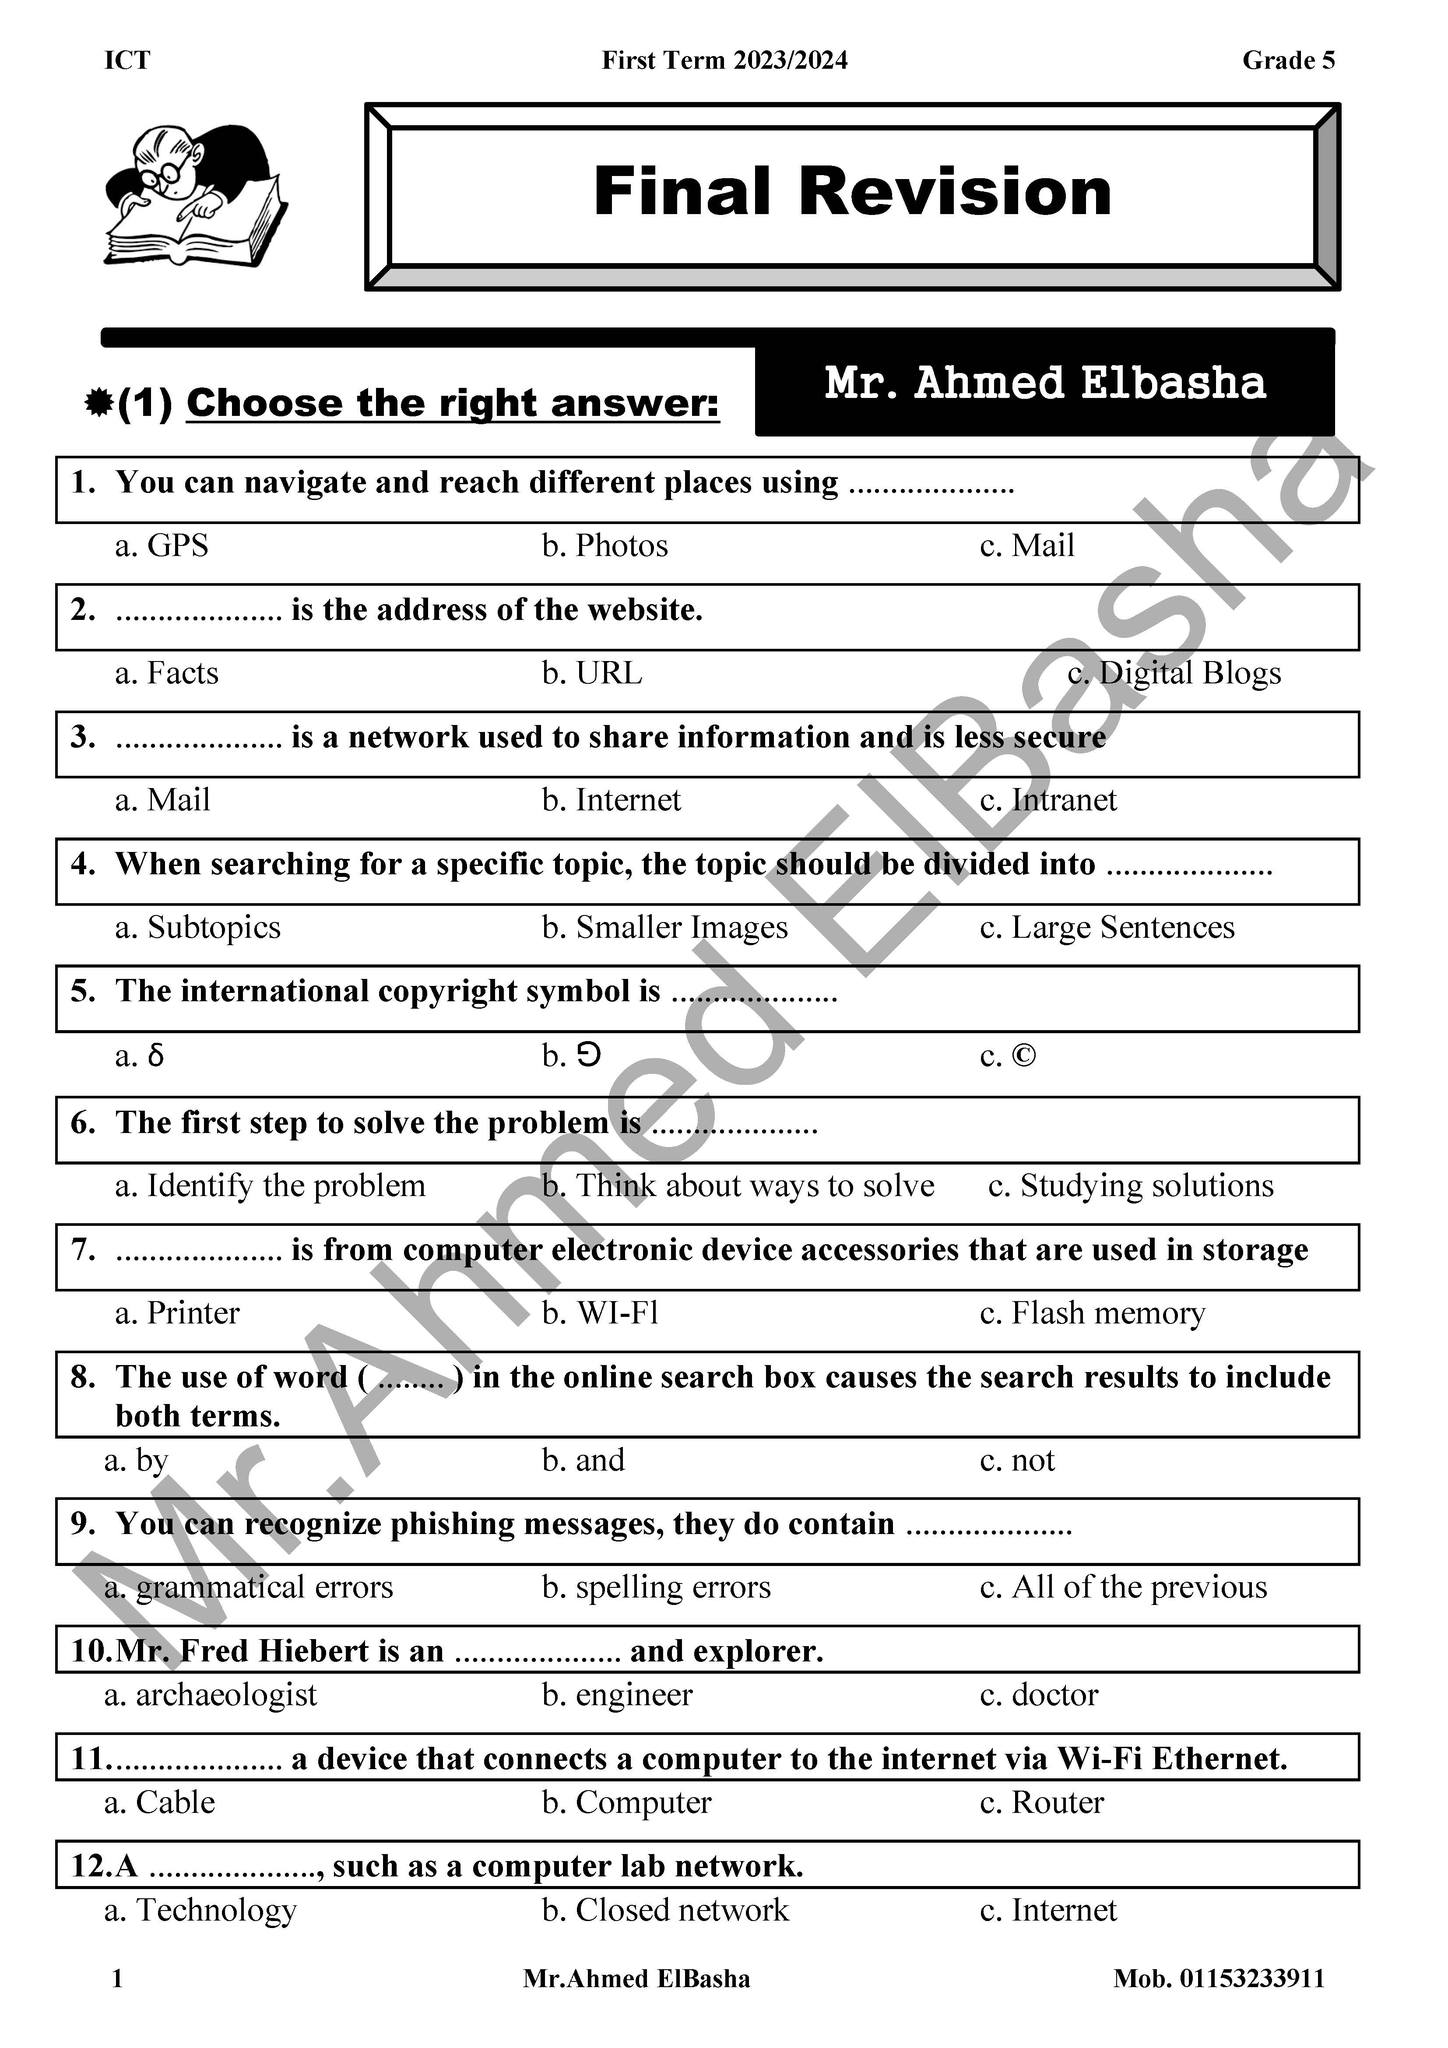 مدرس دوت كوم مراجعة نهائية ICT بالإجابات للصف الخامس الإبتدائى الترم الأول 2024 أ/ أحمد الباشا	